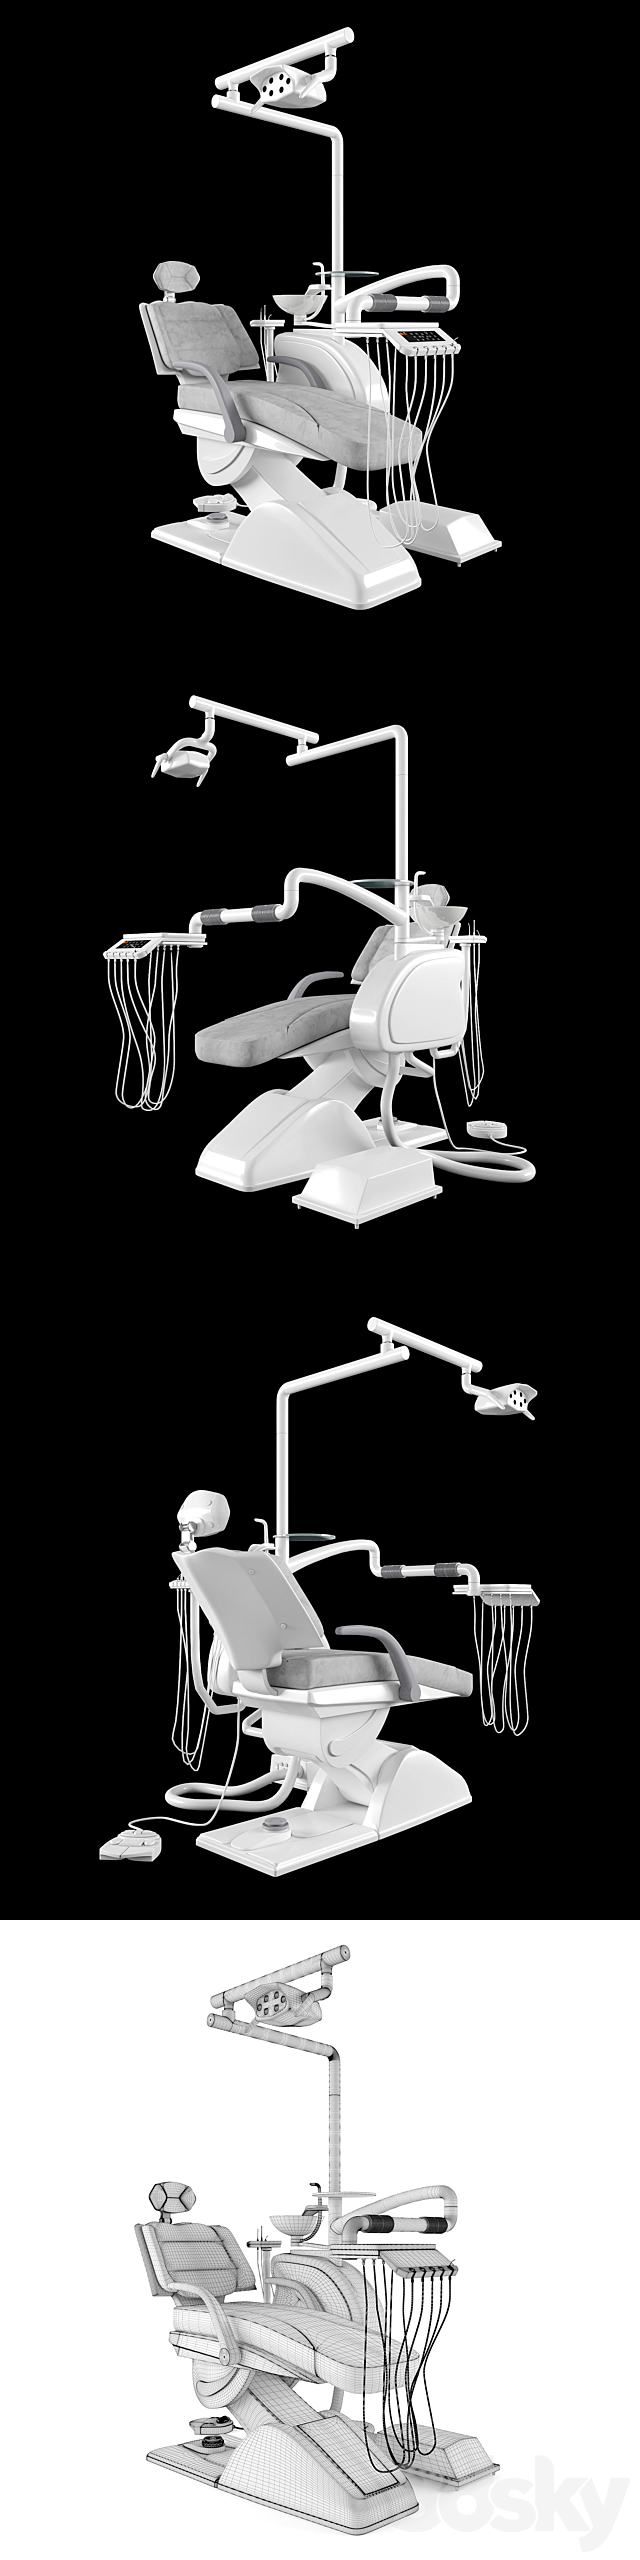 Equipment for dentistry 3DSMax File - thumbnail 2